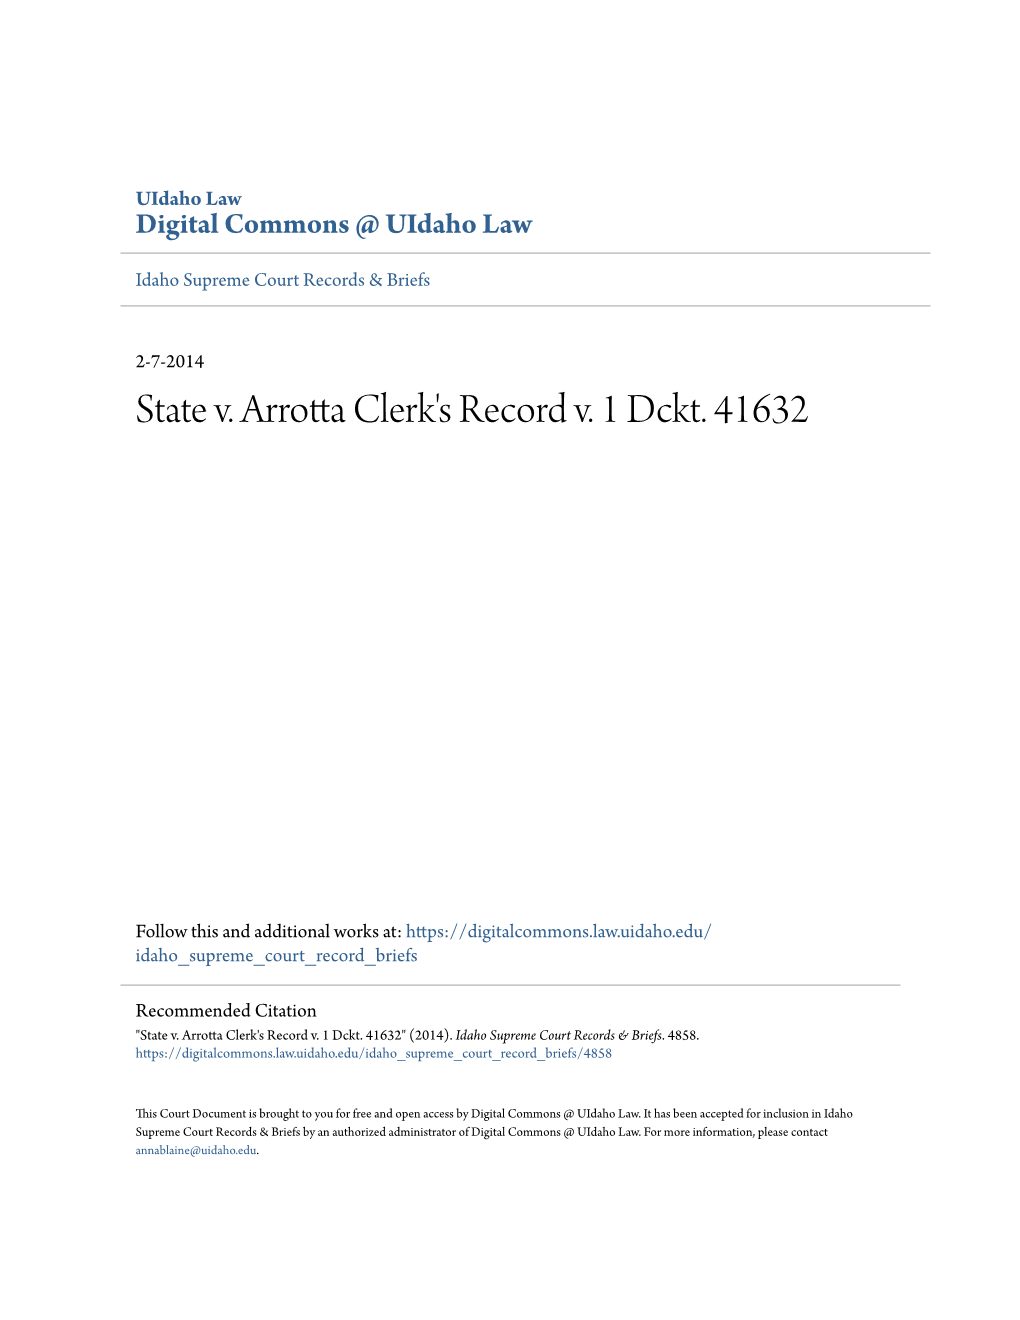 State V. Arrotta Clerk's Record V. 1 Dckt. 41632